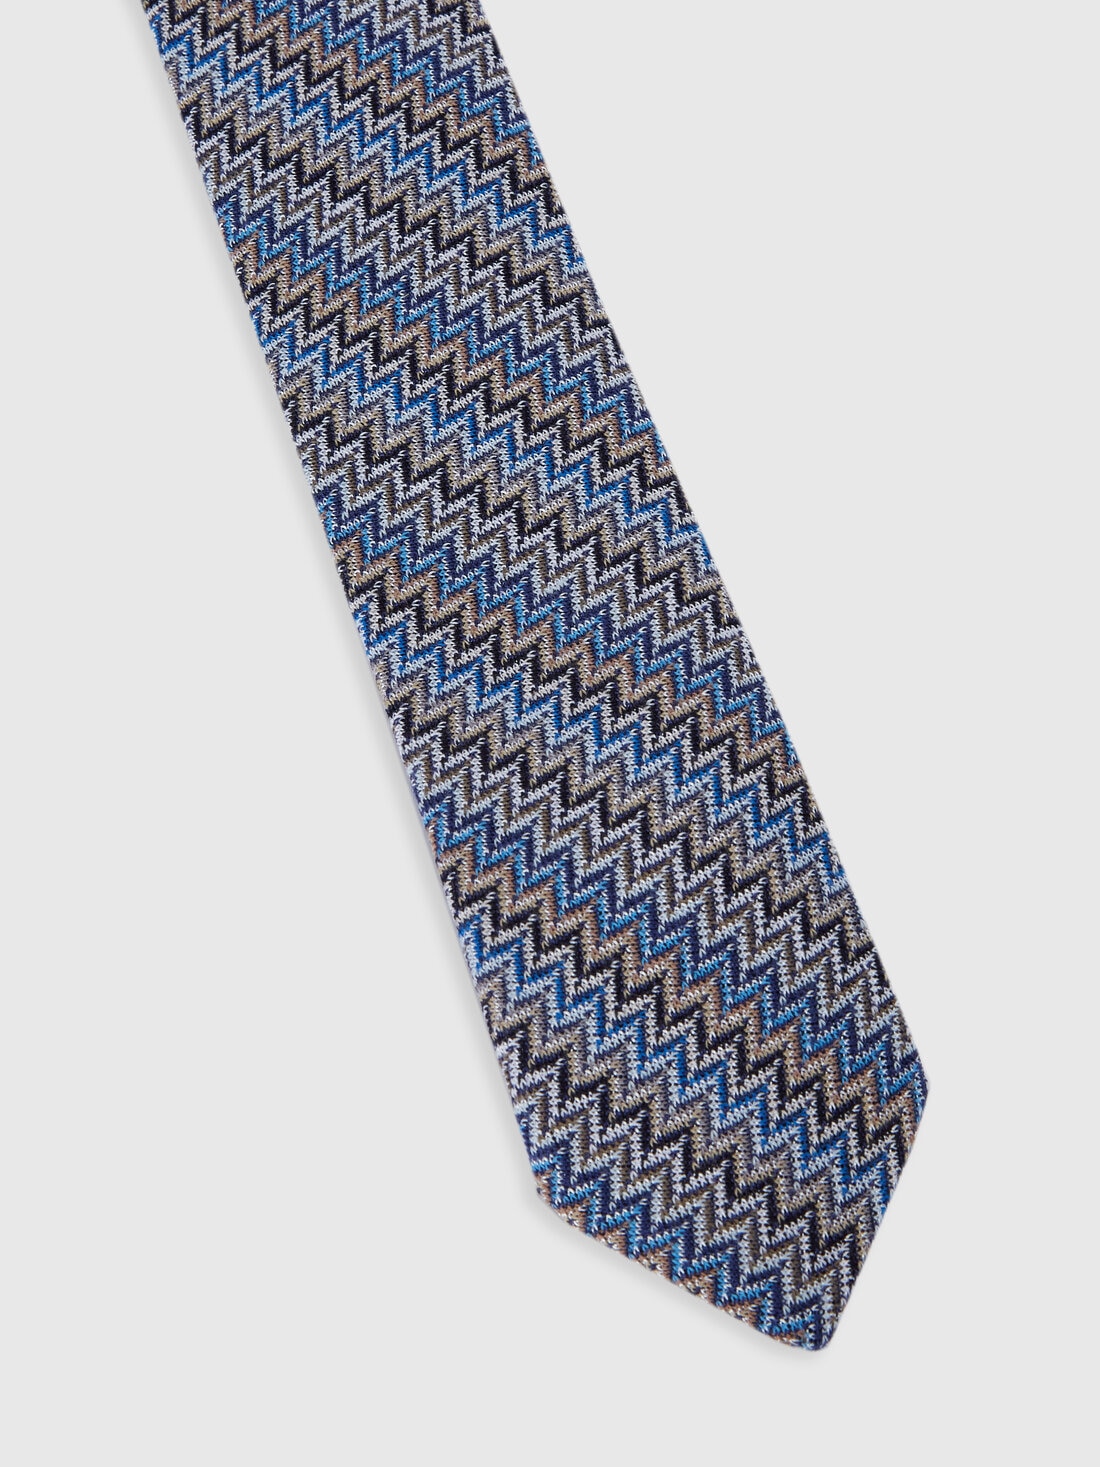 Krawatte aus Viskose und Baumwolle mit Zickzackmuster, Mehrfarbig  - 8053147141855 - 1